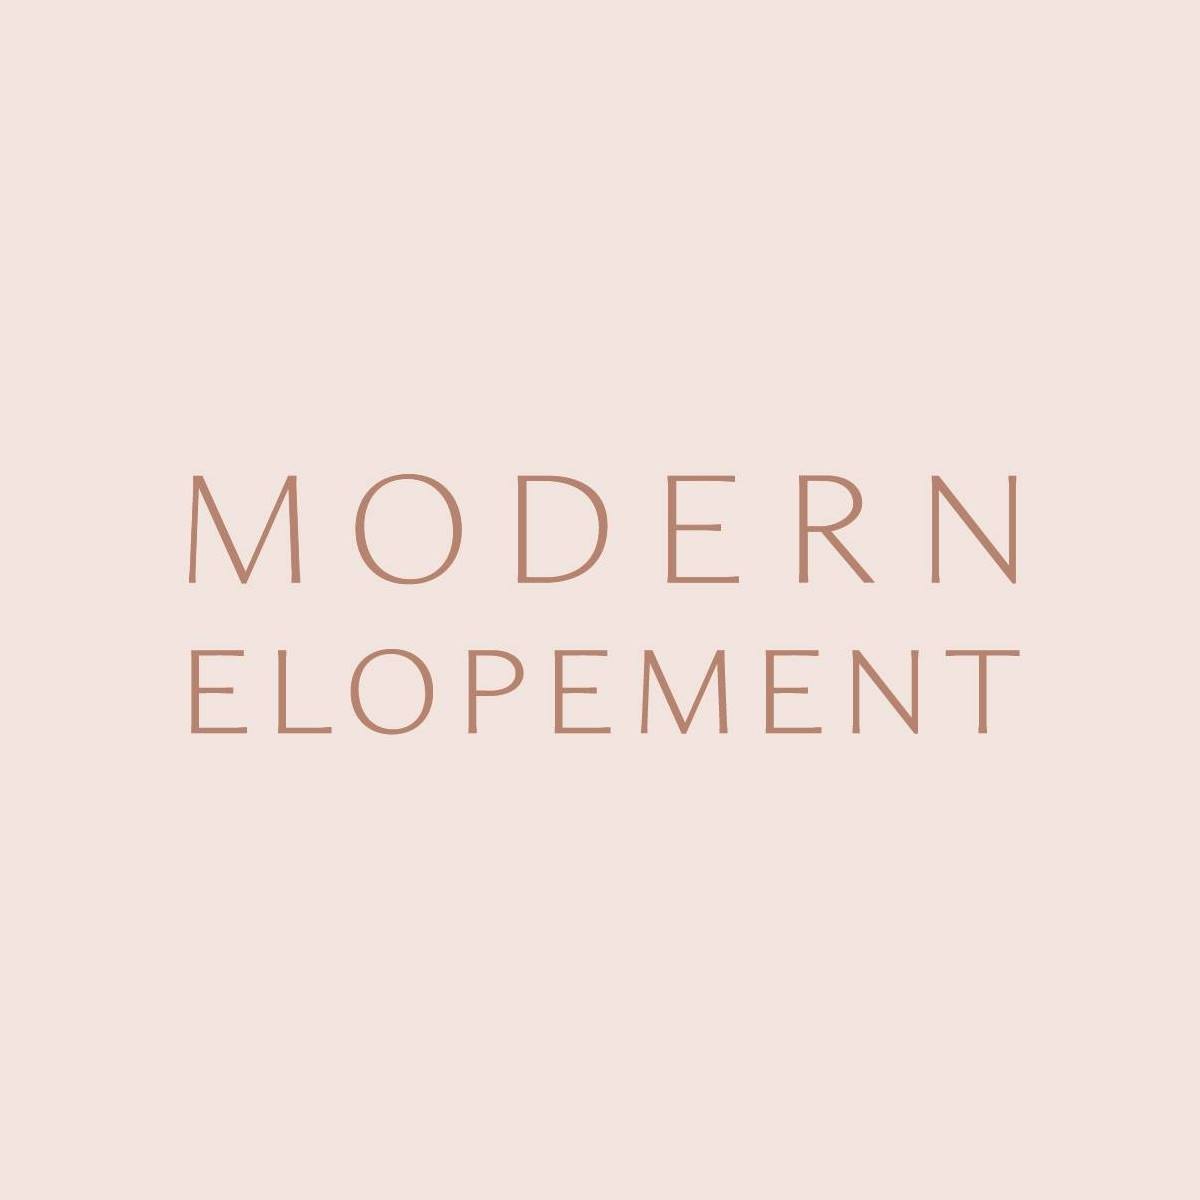 Modern Elopement logo